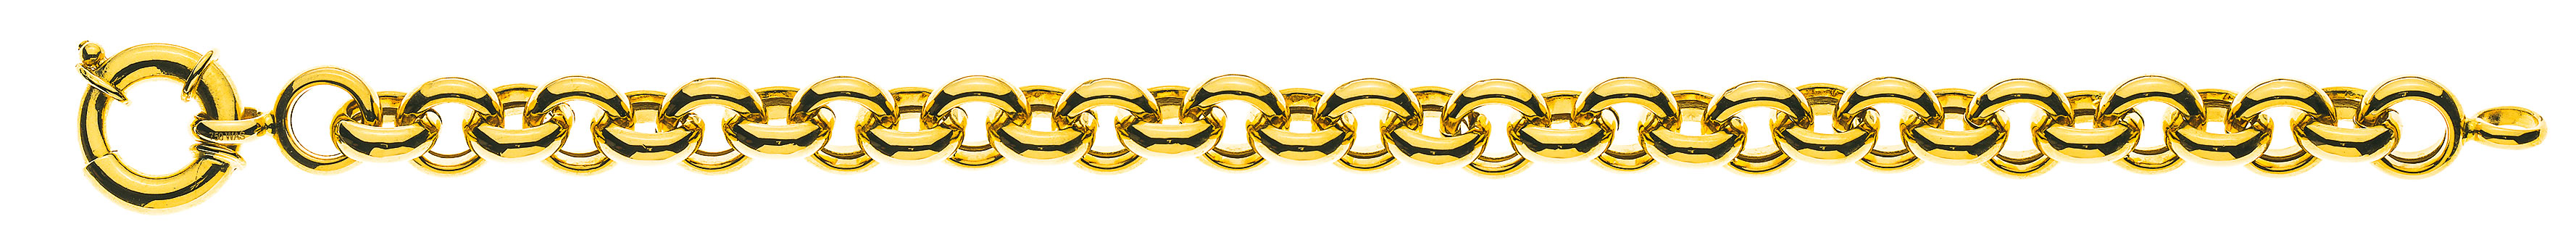 AURONOS Prestige Bracelet en or jaune 18k Chaîne à pois 9mm 19cm 